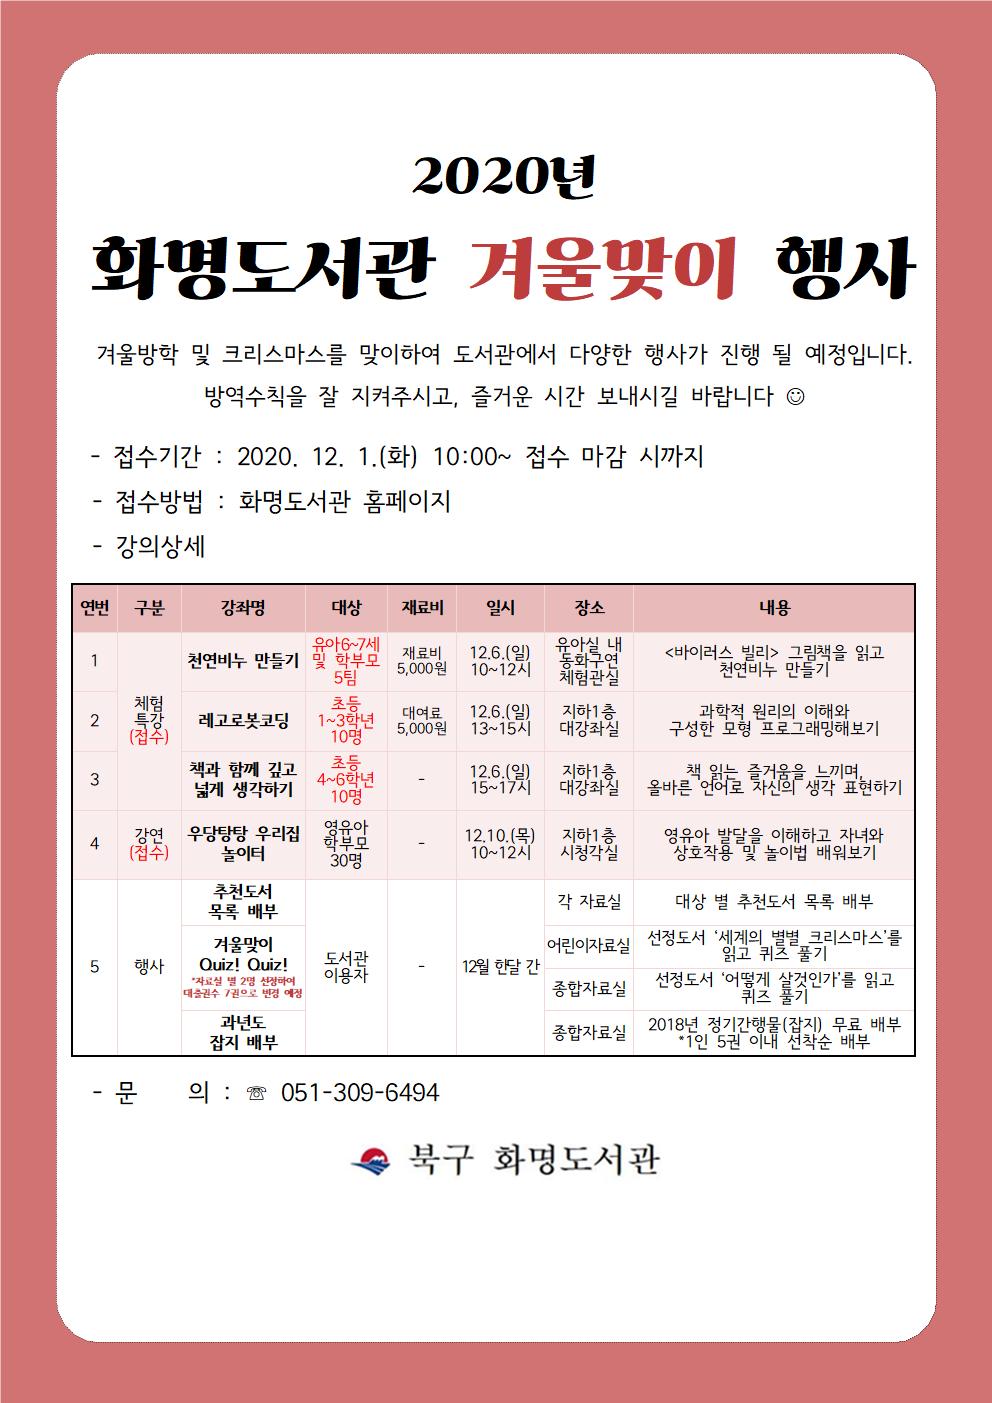 화명도서관 겨울맞이 행사 안내(수정)